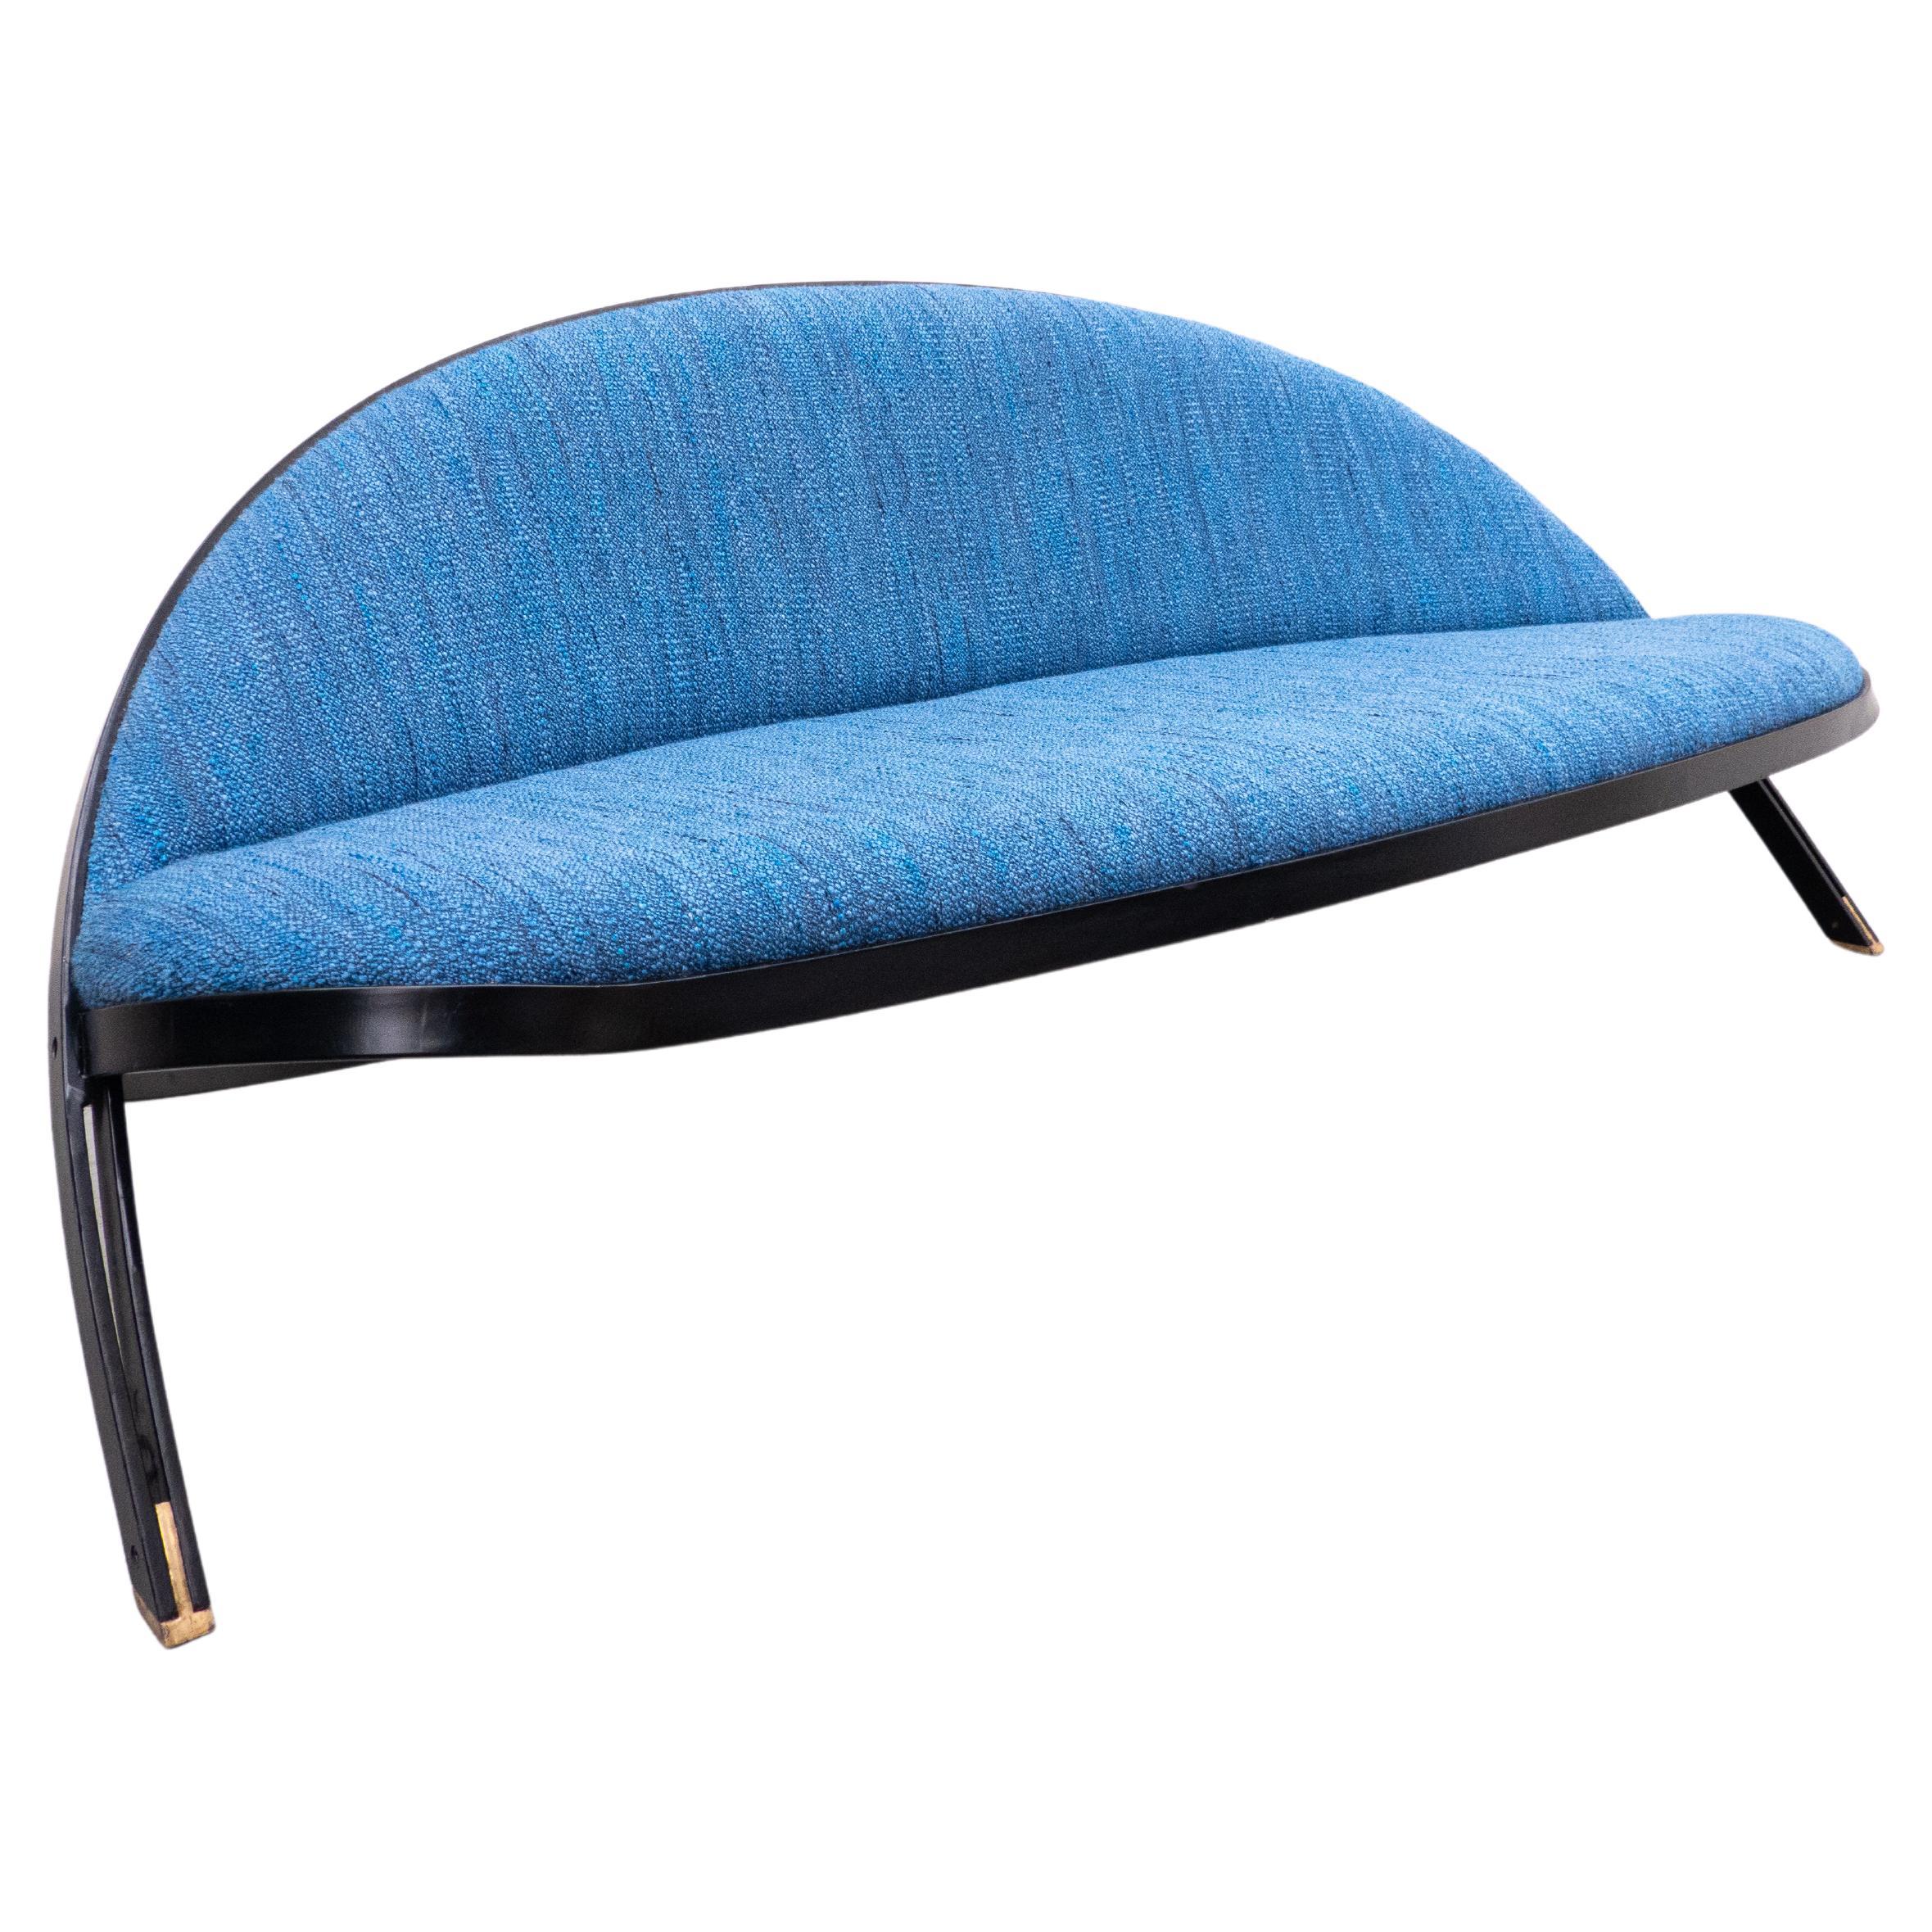 Italian Mid-Century Modern Blue 'Saturno' Sofa by Gastone Rinaldi for Rima, 1957